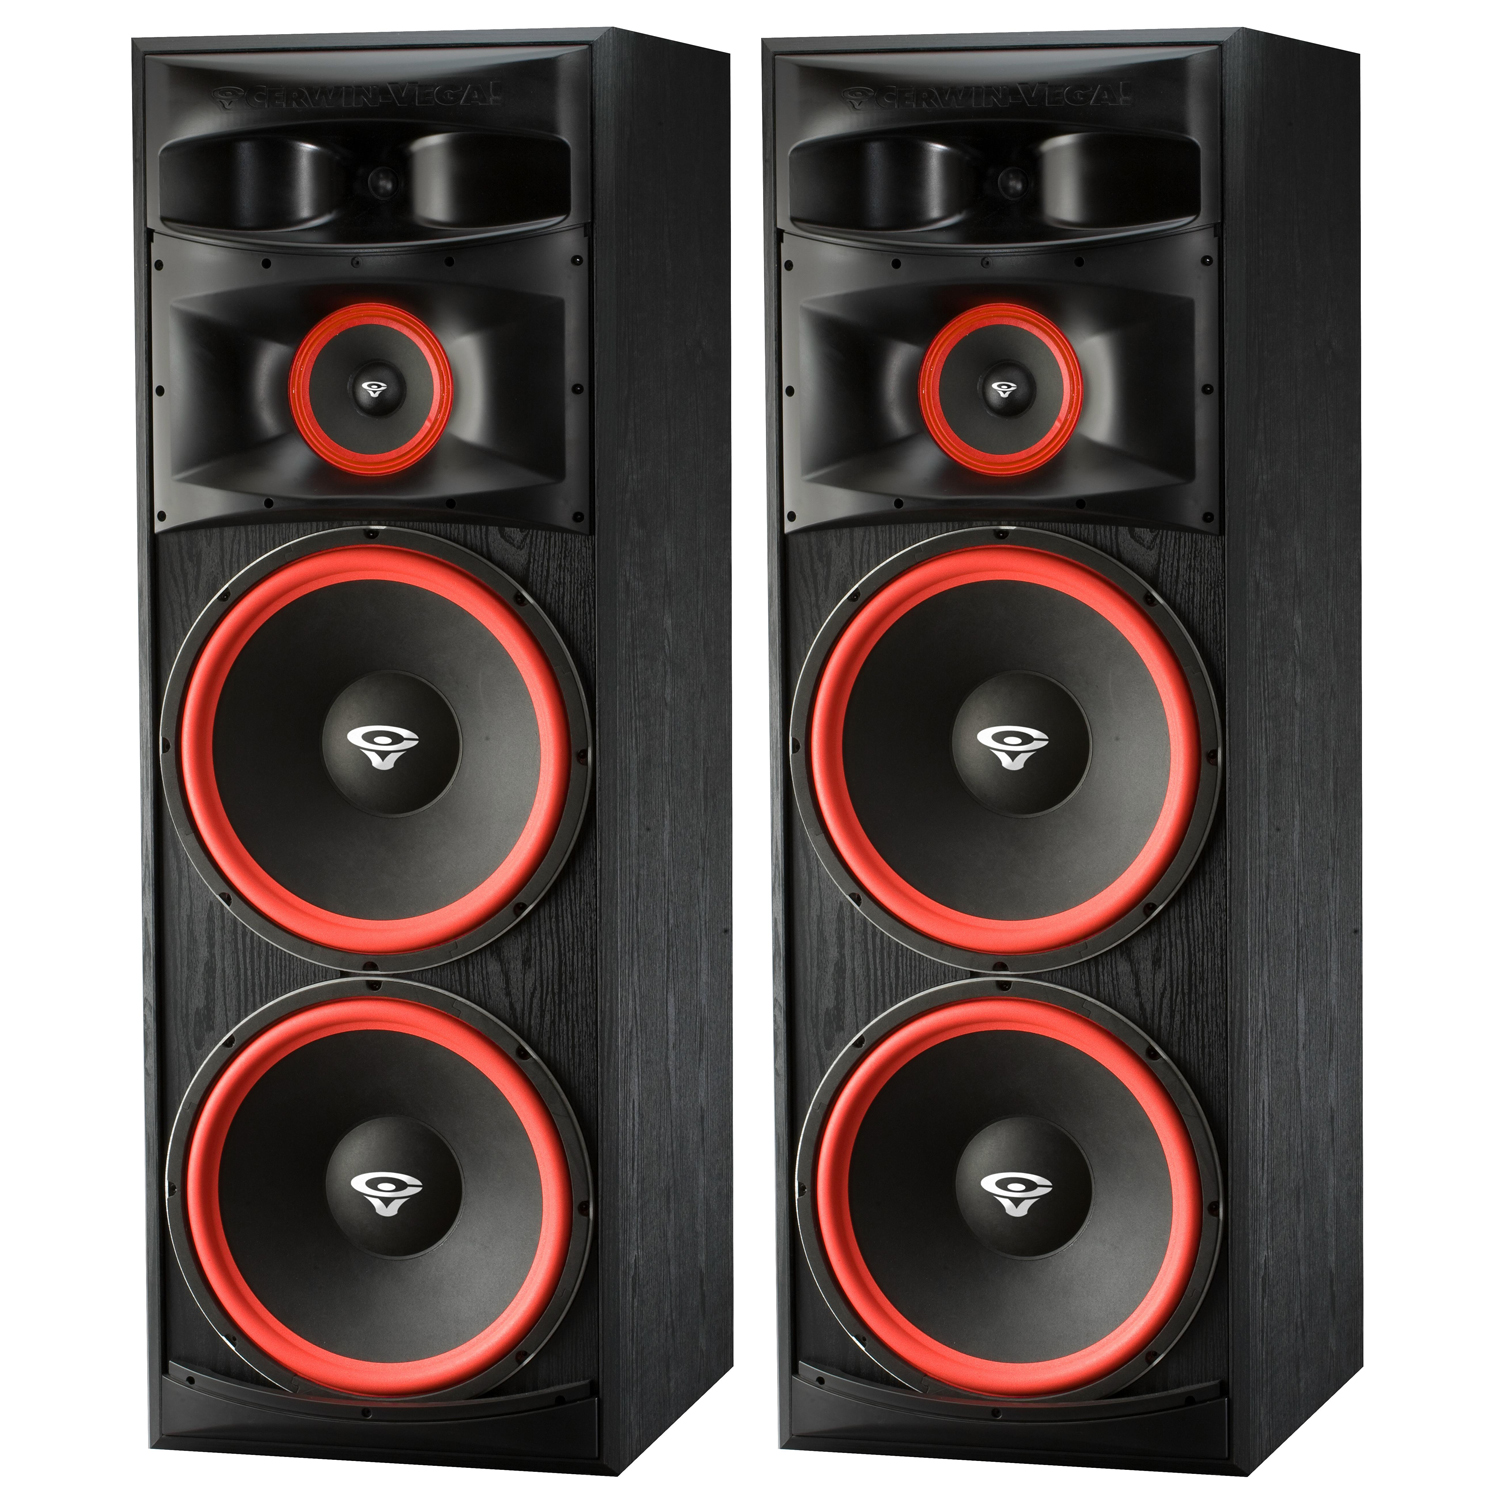 Cerwin-Vega XLS-215 Dual 15" Way Floorstanding Tower Speaker - Shop l Ultimate DJ Gear l UDG Gear l Stanton DJ l Technics DJ l Crane Hardware l AIAIAI l Cerwin-Vega I